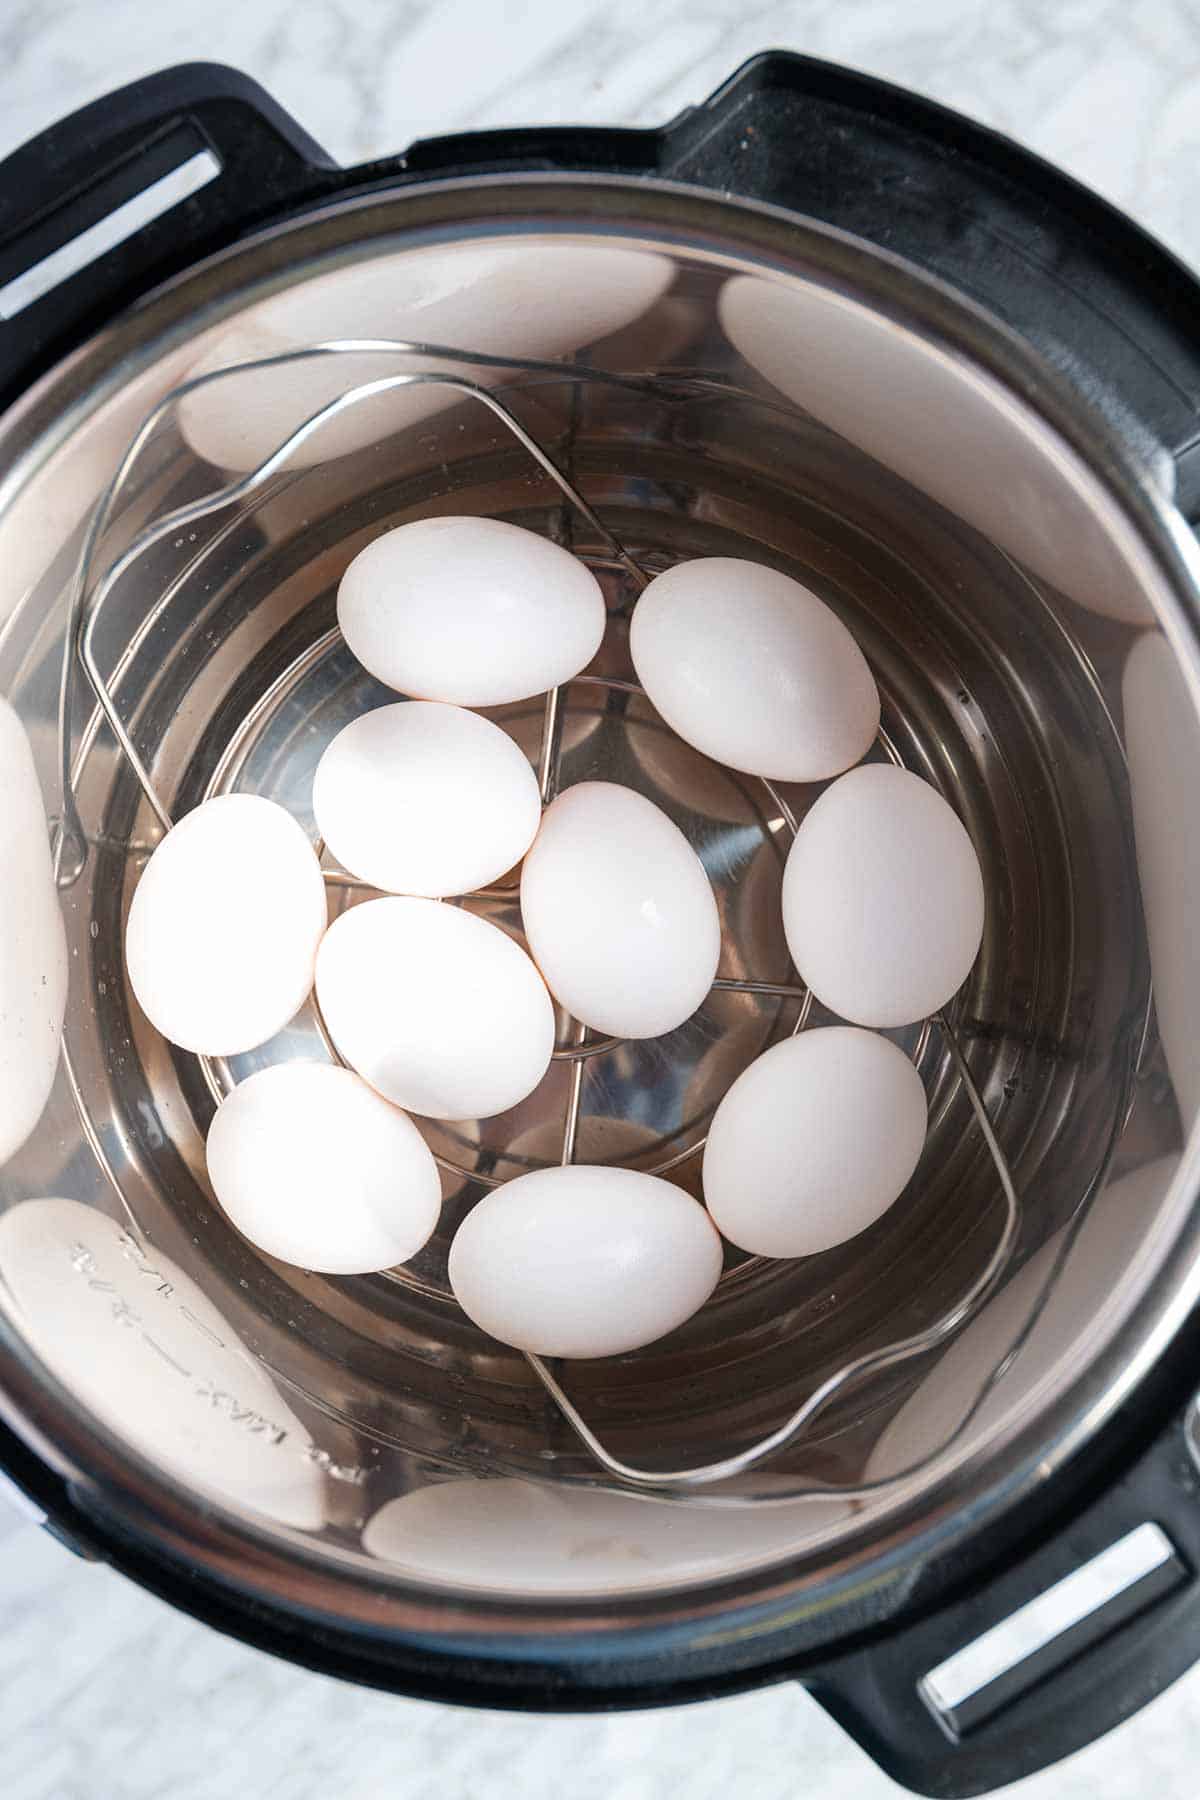 https://www.inspiredtaste.net/wp-content/uploads/2019/04/Easy-Instant-Pot-Hard-Boiled-Eggs-Recipe-2-1200.jpg